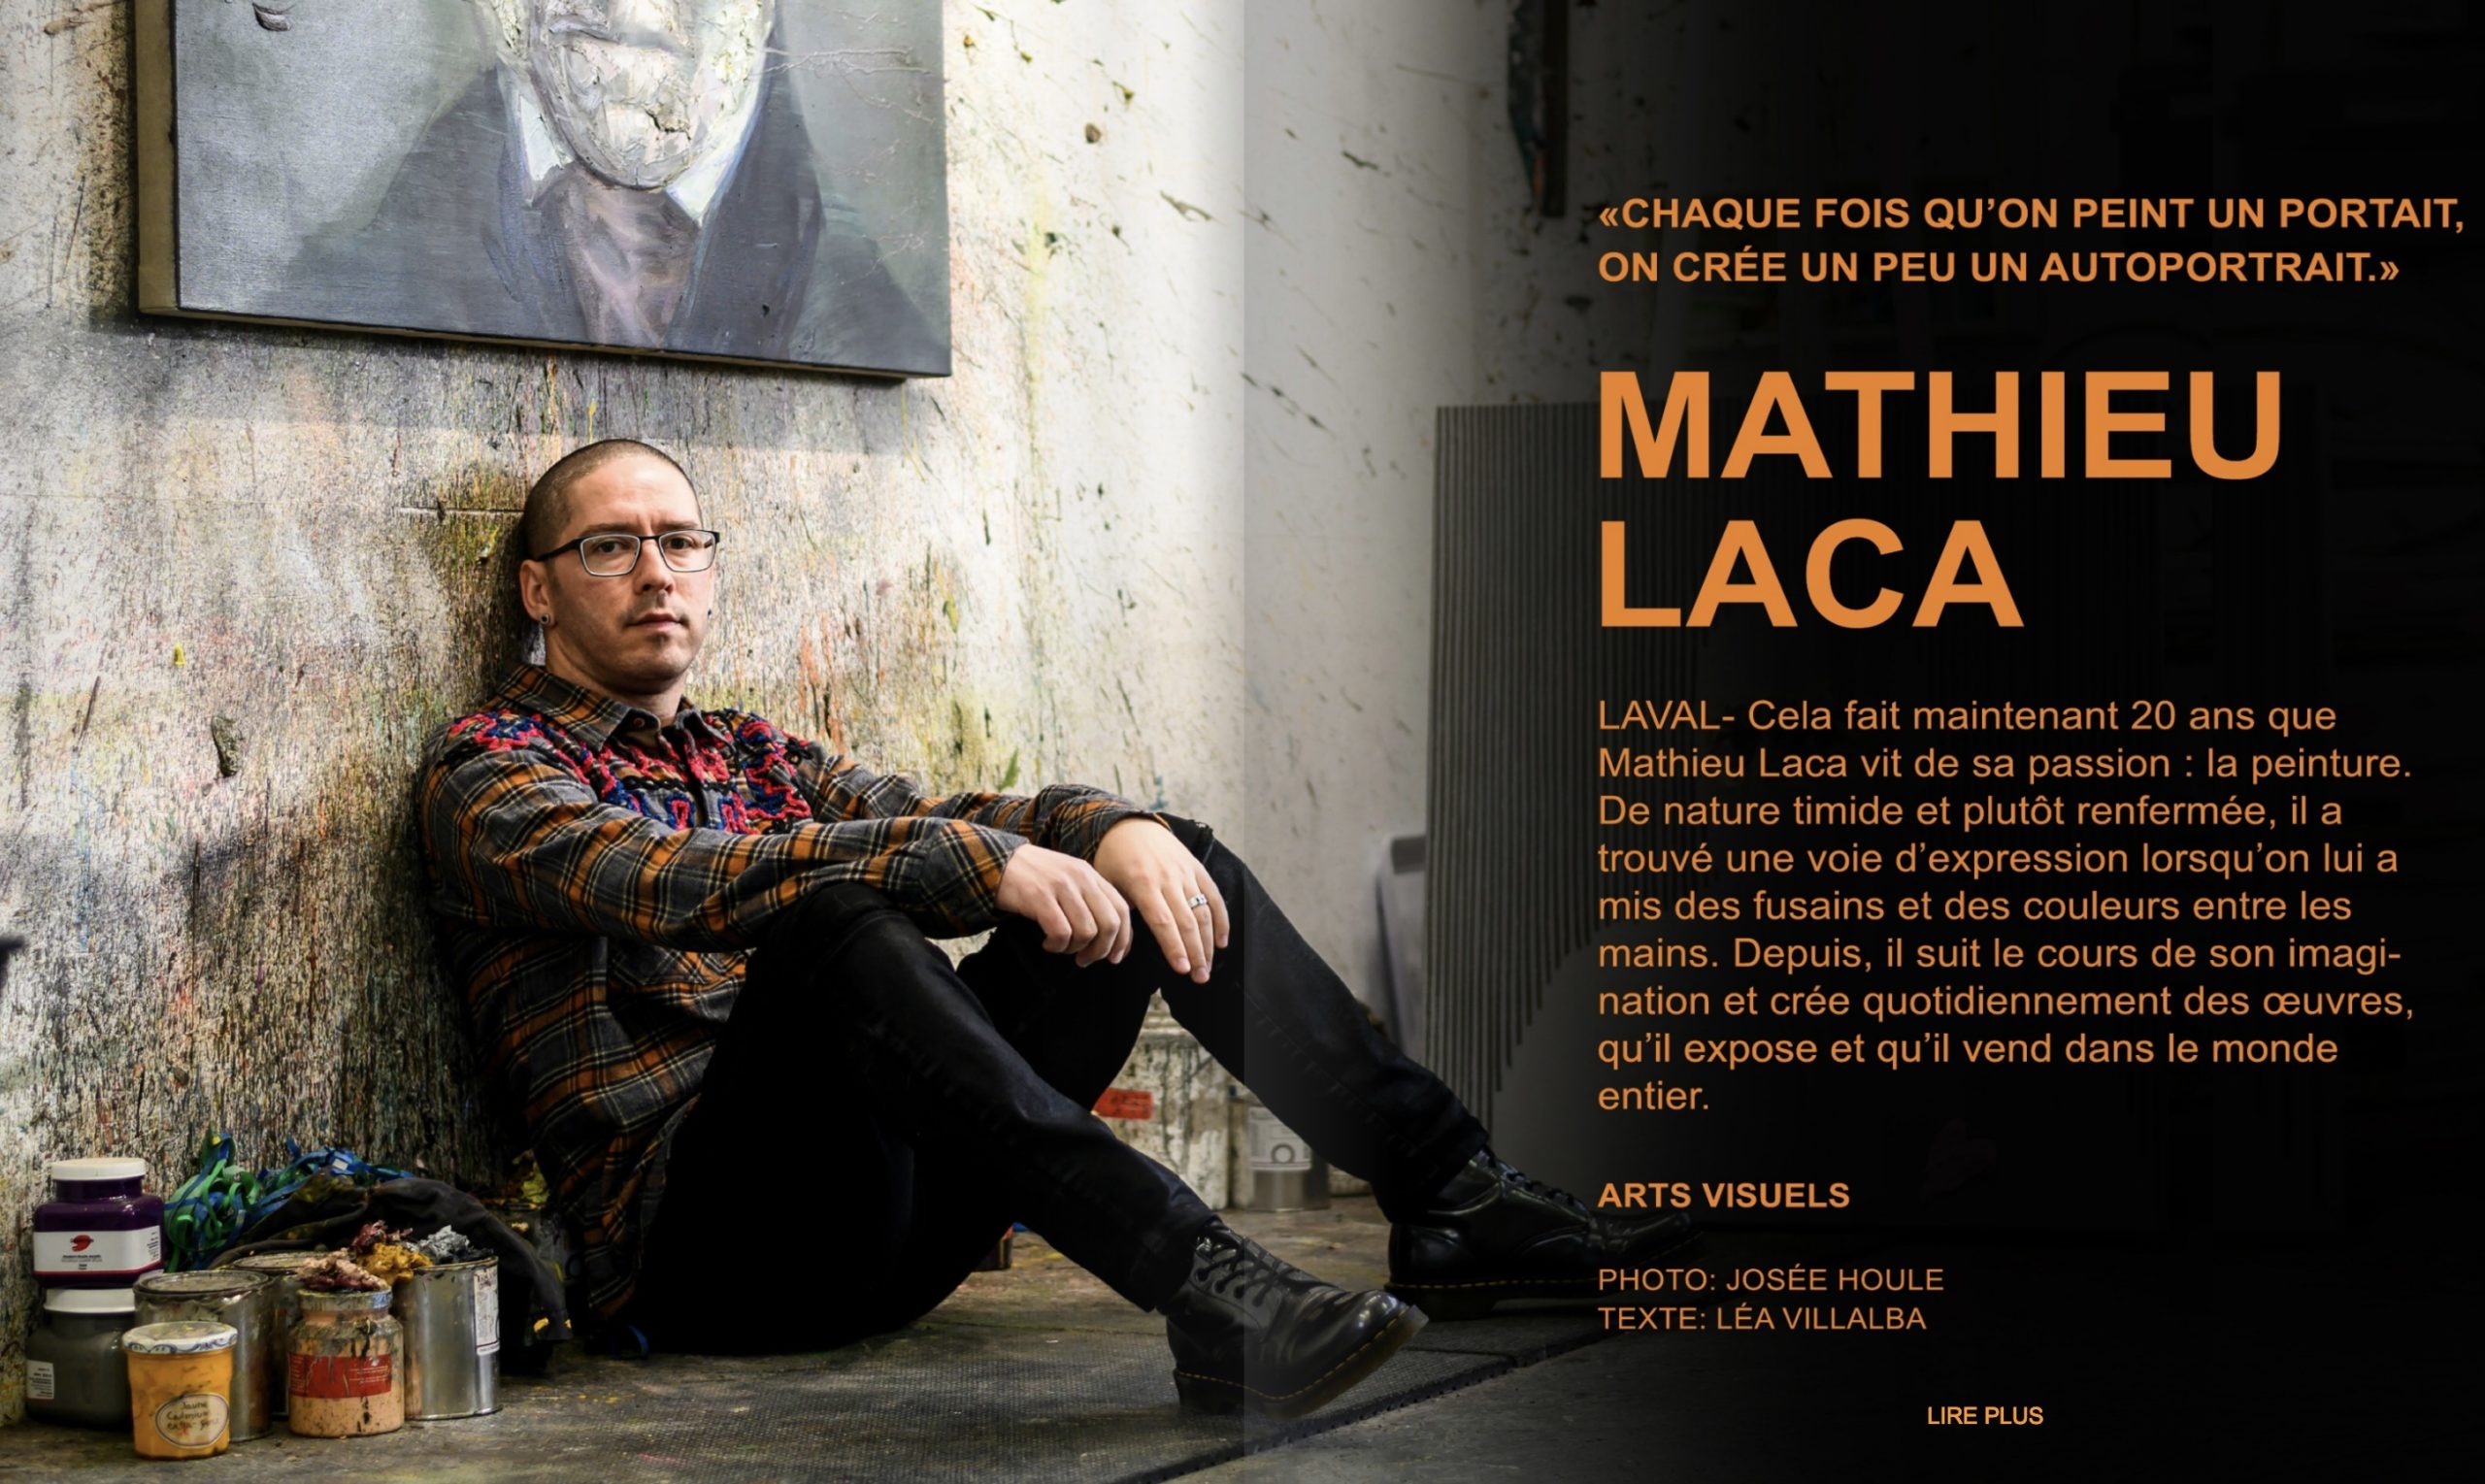 Mathieu Laca interviewed in L'Artist Magazine in March 2020